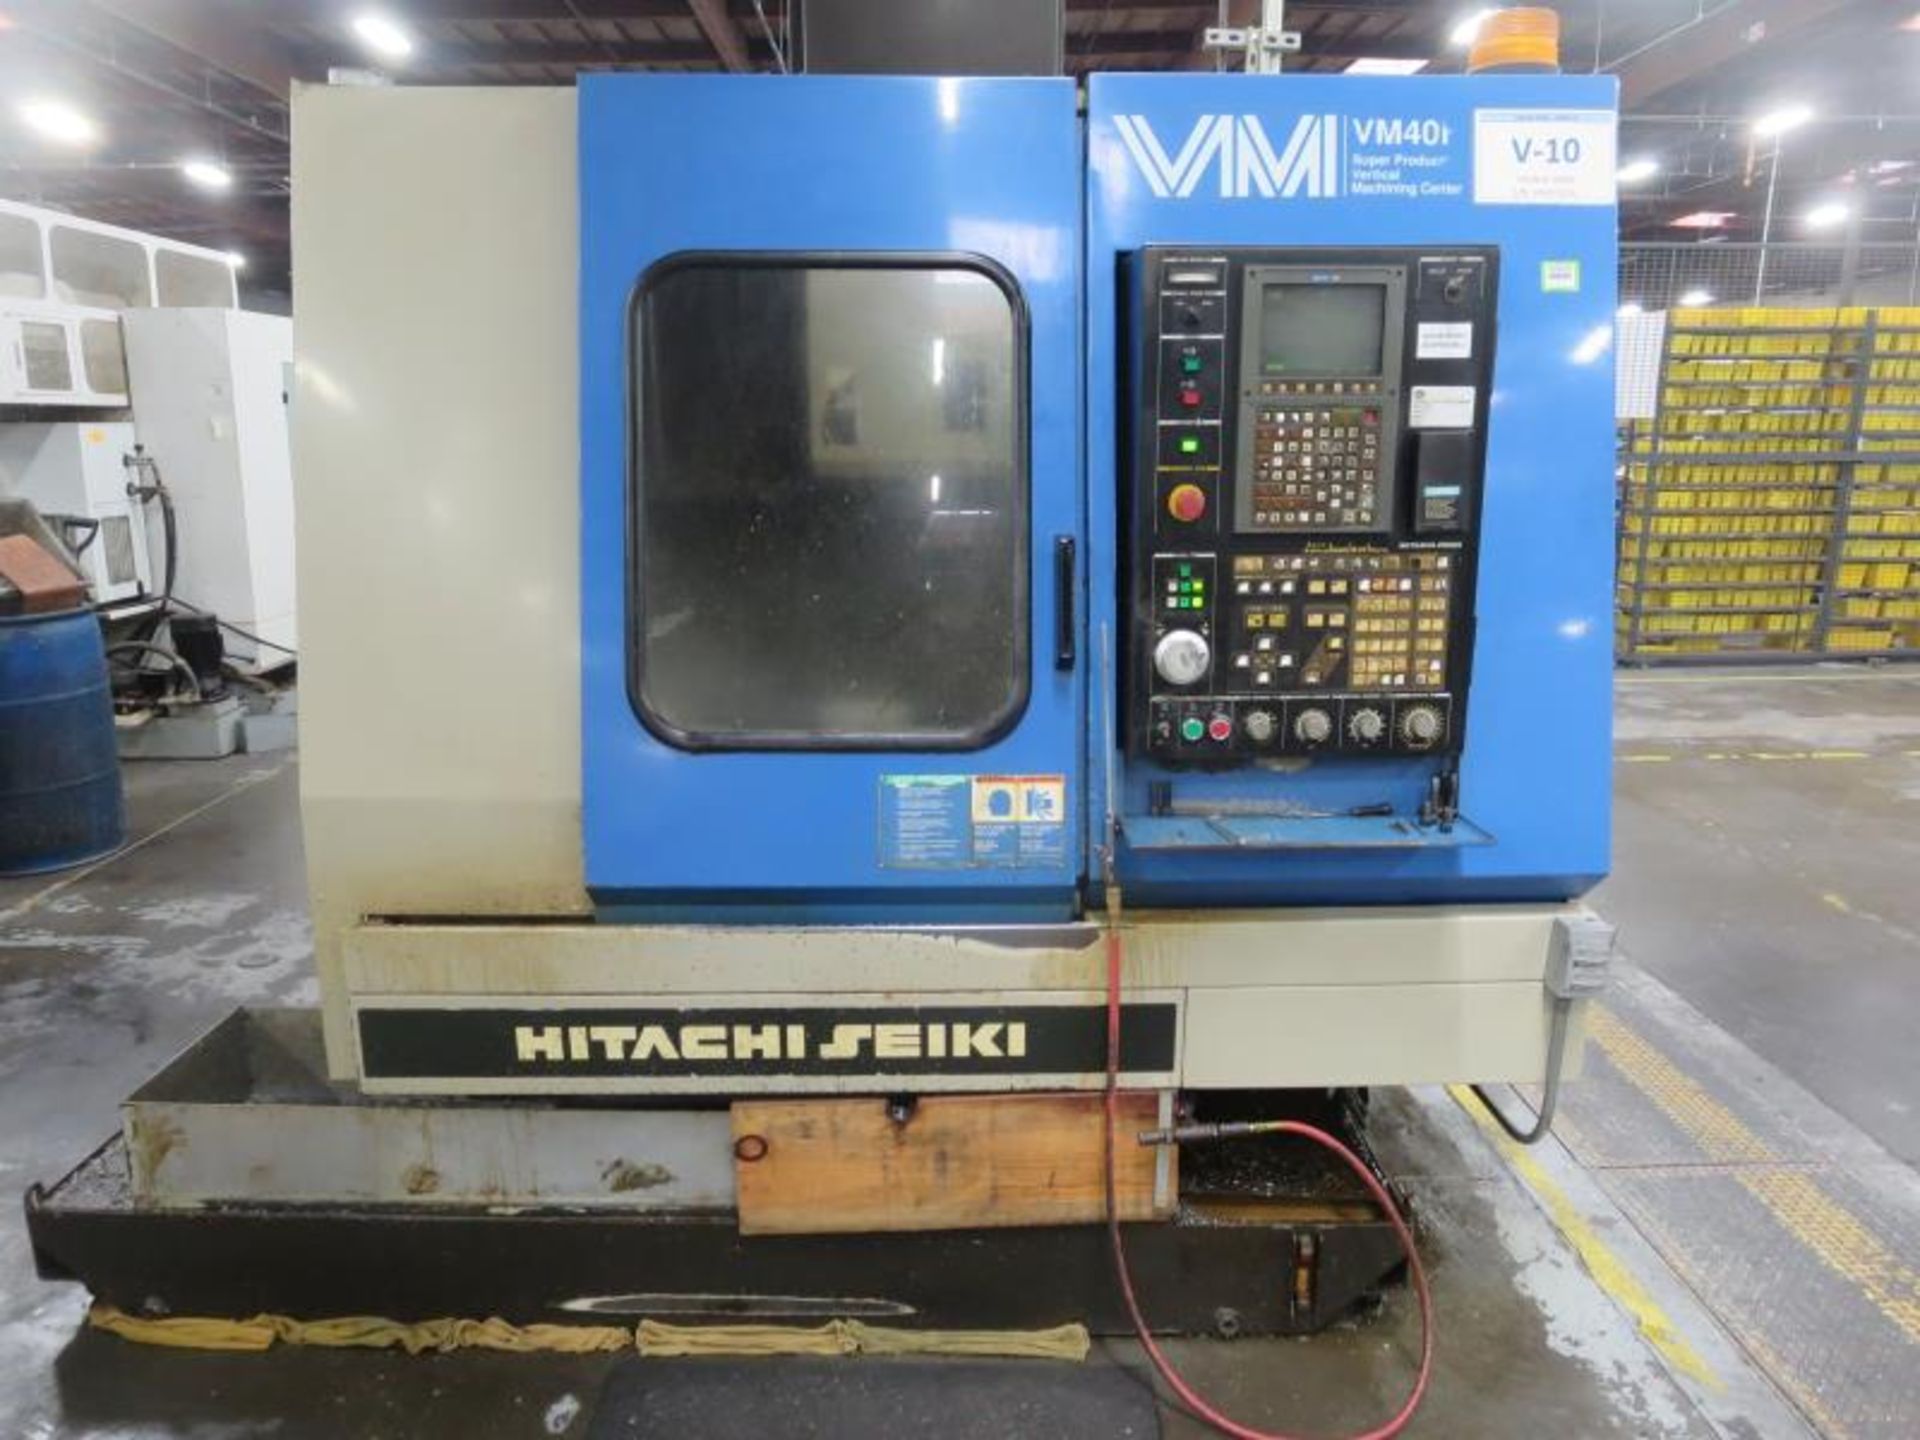 Hitachi Seiki VM40H CNC Vertical Machining Center. 3 Axis, 7.5hp, 8,000 RPM, Approx. 12" x 24" table